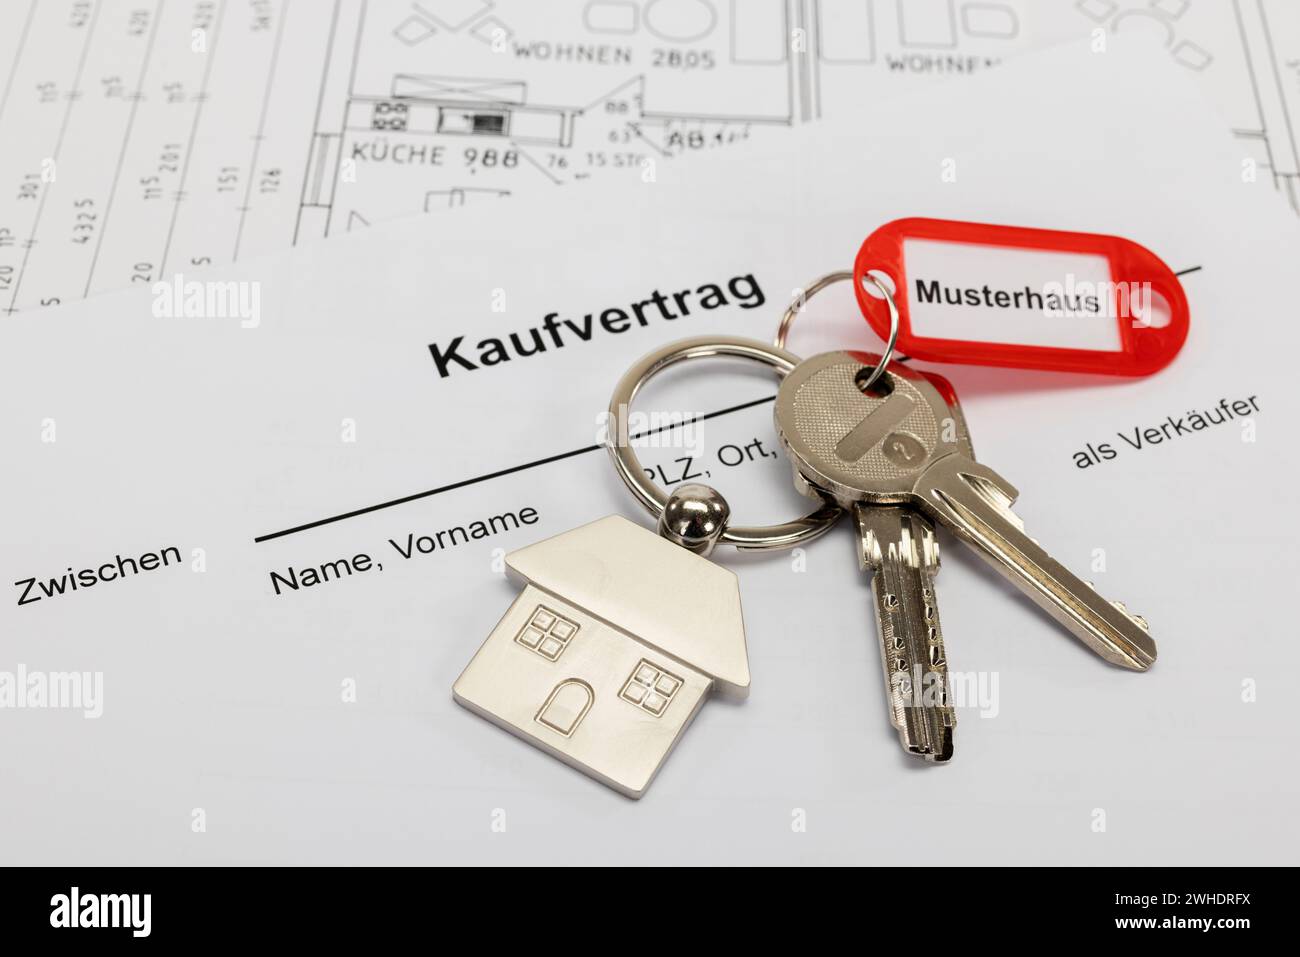 Schö¸sselbund with metal Schö¸sselanö€°nger house, red Schö¸sselanö€°nger, with inscription ëMusterhausë, purchase contract, floor plan, Stock Photo